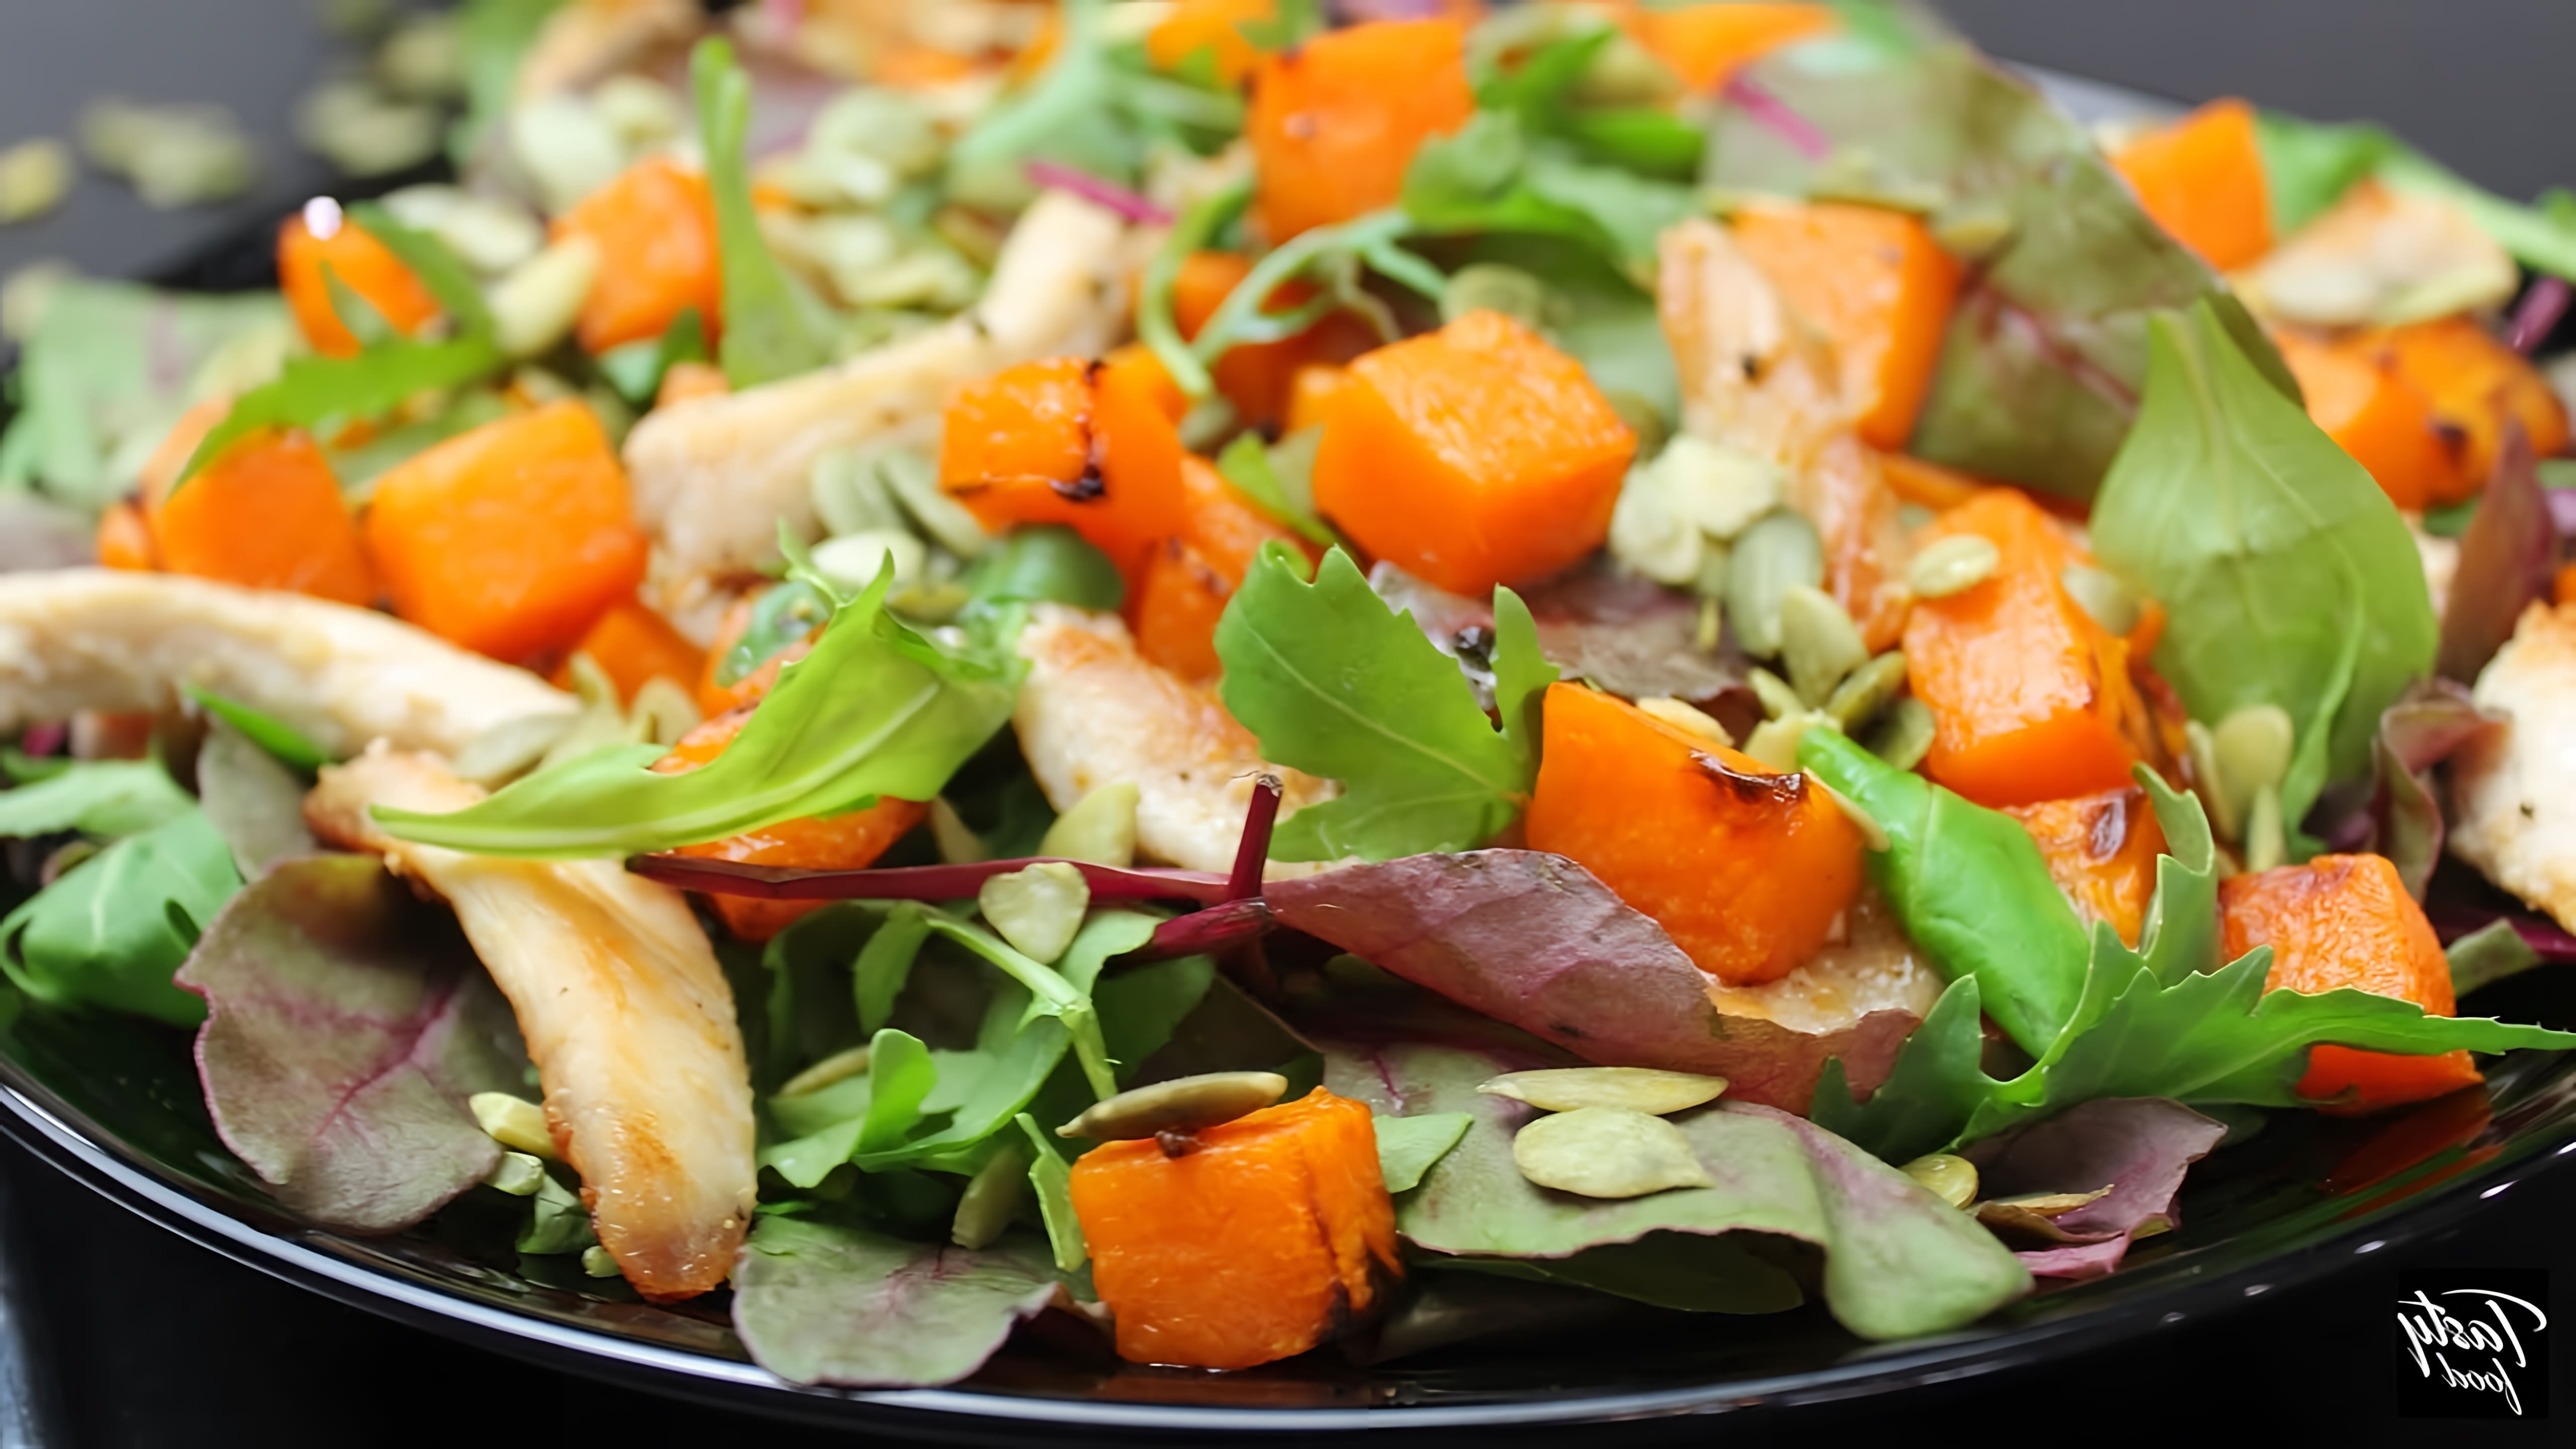 В этом видео демонстрируется рецепт салата из тыквы, который можно приготовить в осенний период